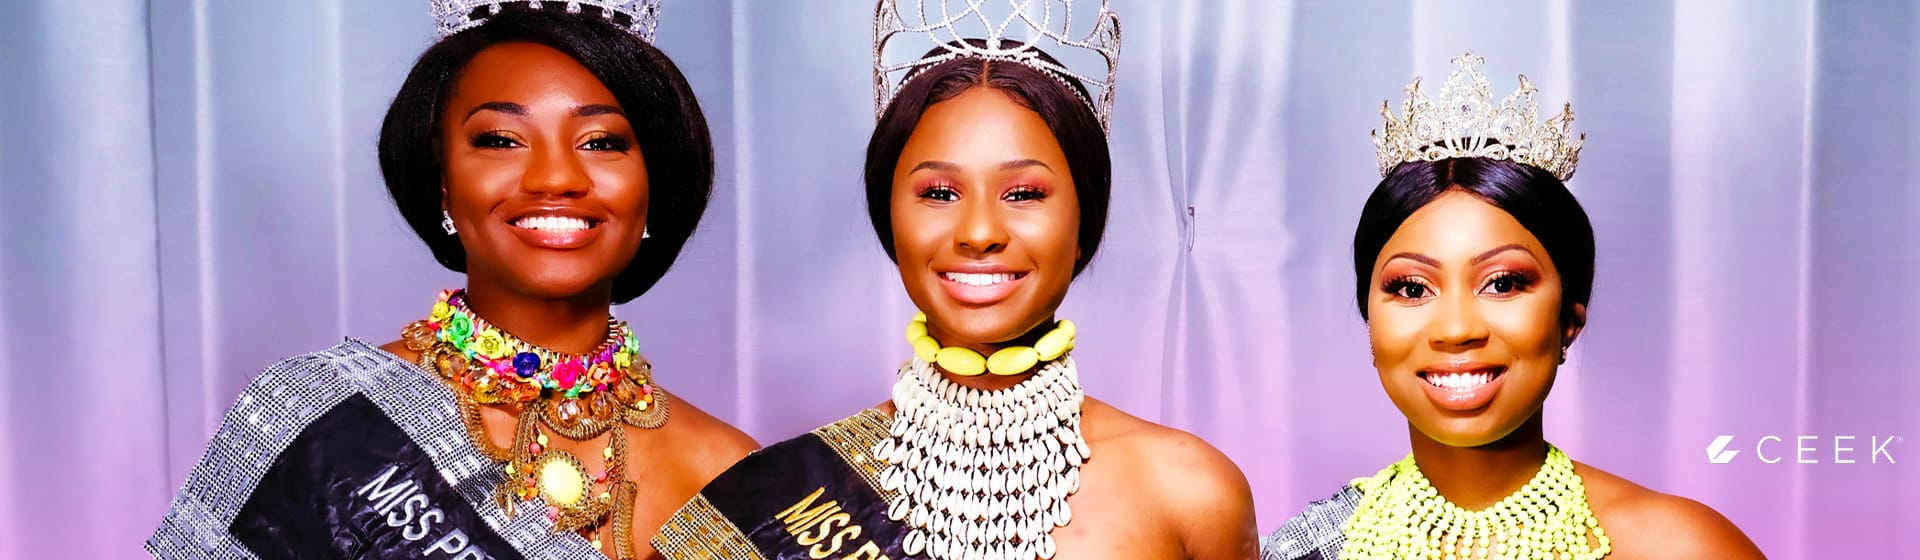 Miss Pride of Africa songs and videos - CEEK.com